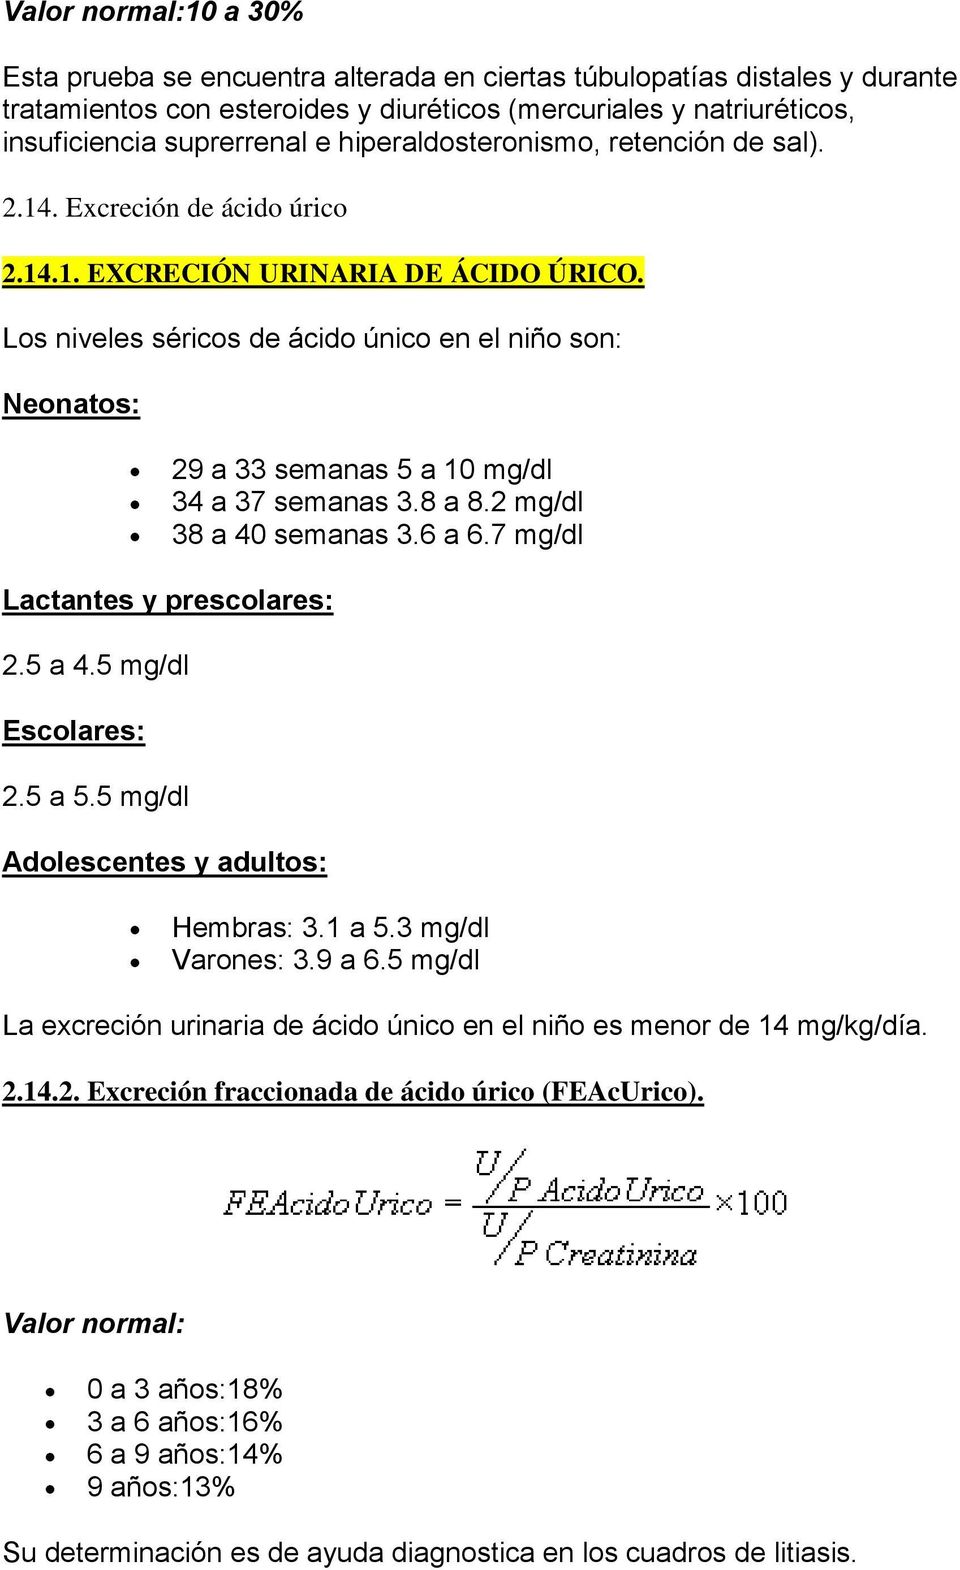 Los niveles séricos de ácido único en el niño son: Neonatos: 29 a 33 semanas 5 a 10 mg/dl 34 a 37 semanas 3.8 a 8.2 mg/dl 38 a 40 semanas 3.6 a 6.7 mg/dl Lactantes y prescolares: 2.5 a 4.